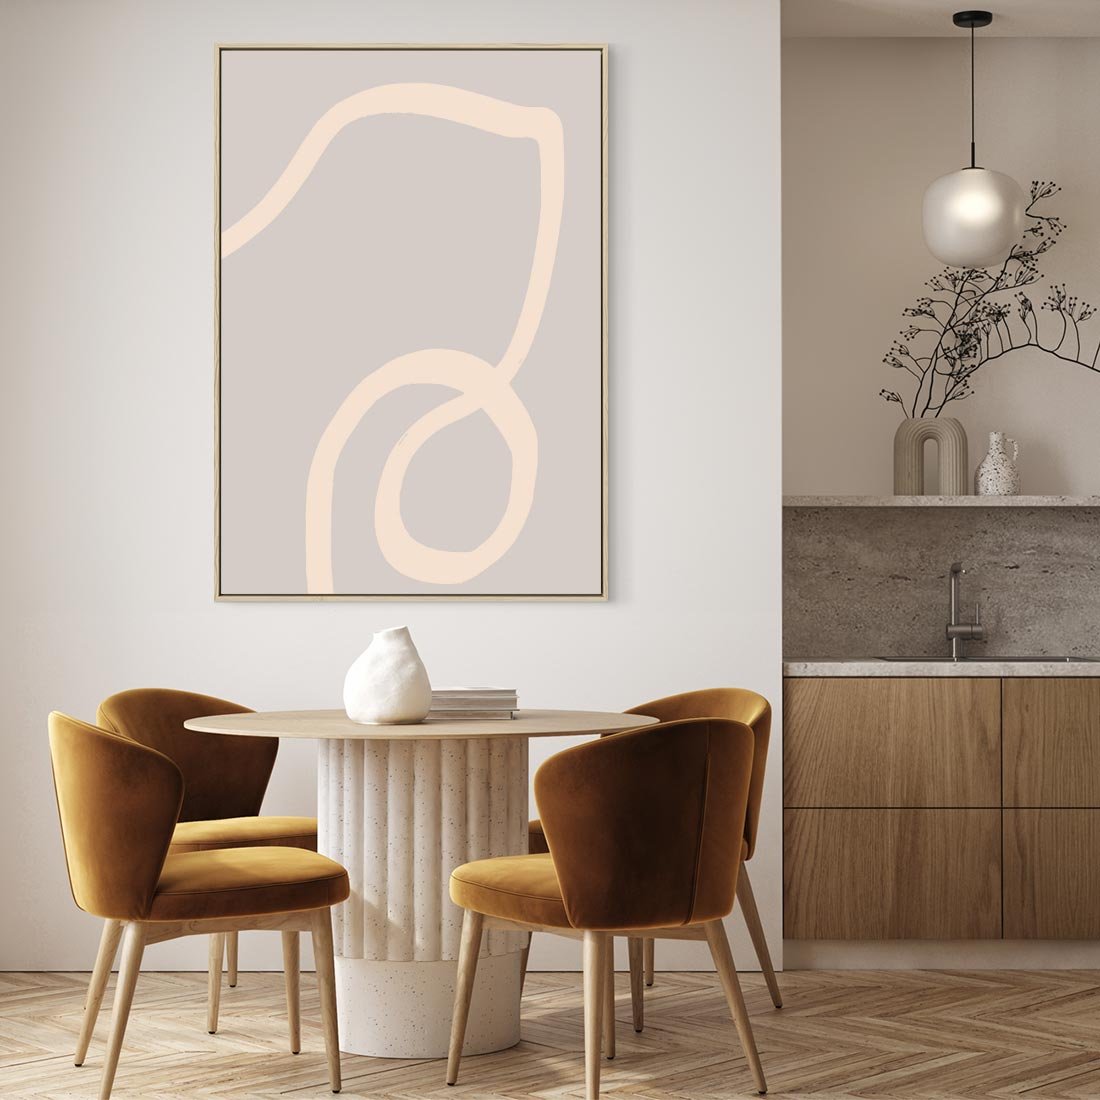 Obraz w ramie 50x70 - Wystylizowana Rewolucja - minimalistyczny obraz, nowoczesny - rama drewno